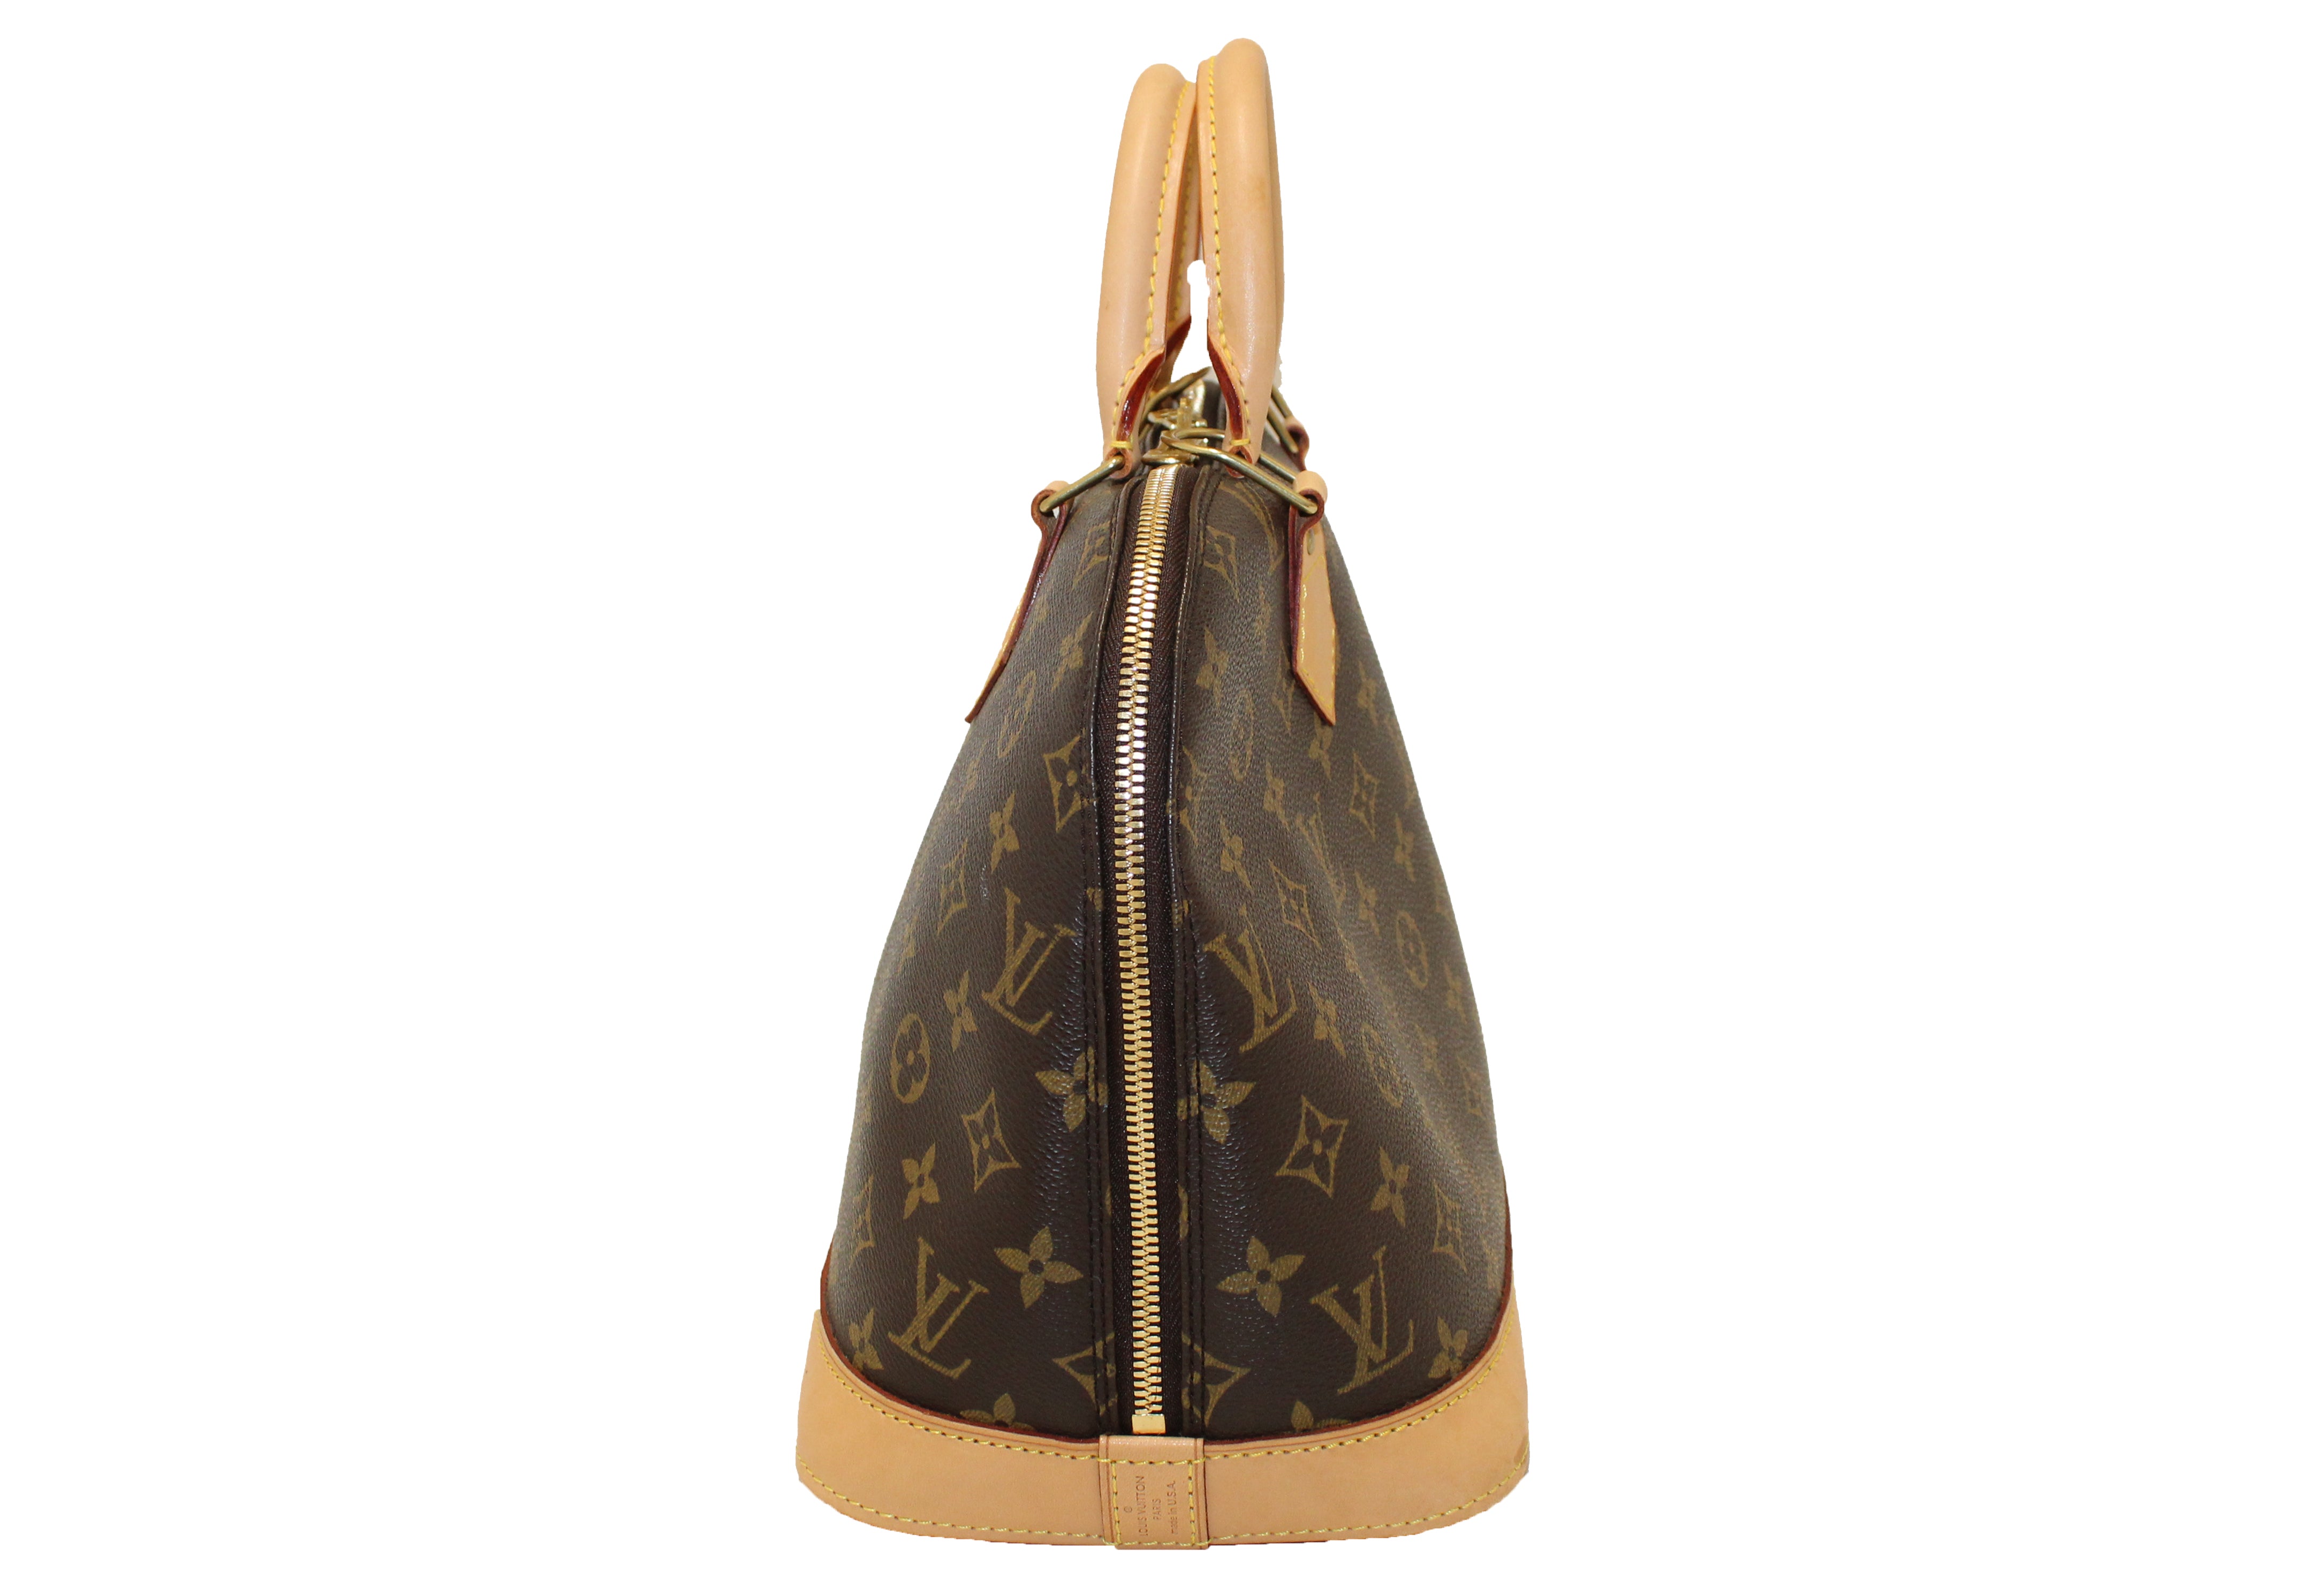 Authentic Louis Vuitton Classic Monogram Alma PM Handbag